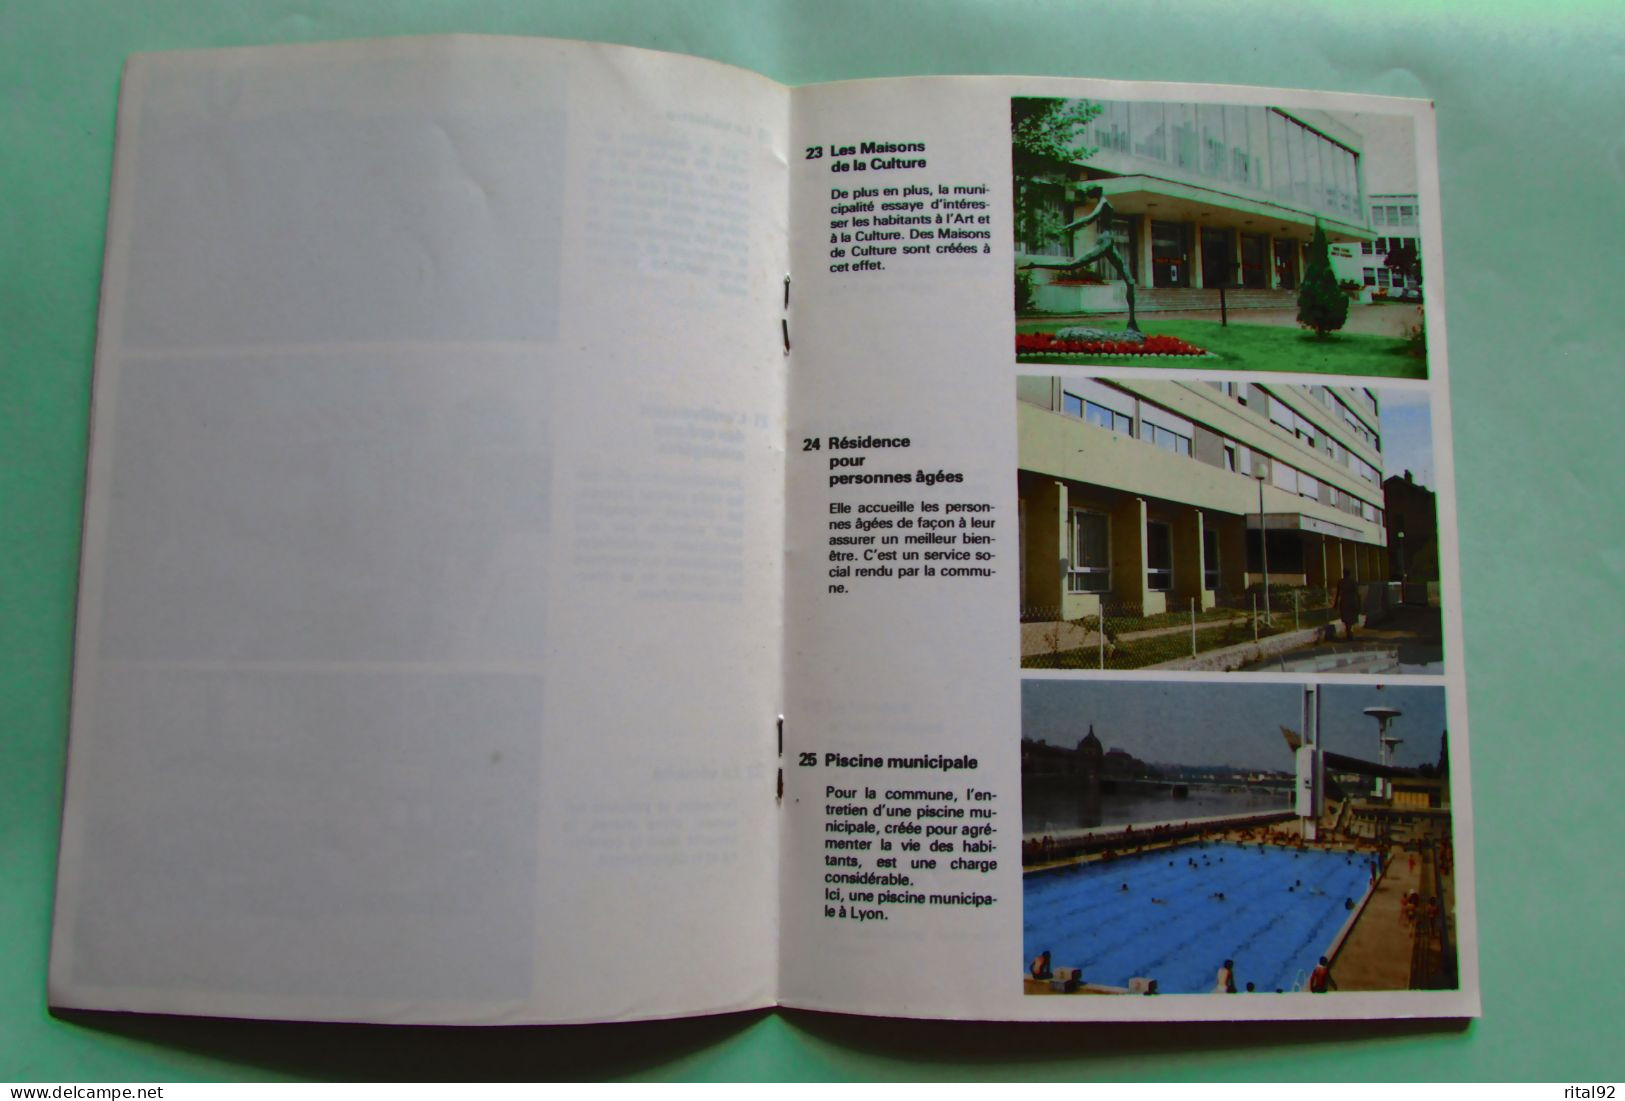 VOLUMETRIX - Livret Educatif Images à Découper - Edition 1979 - Fiches Didactiques